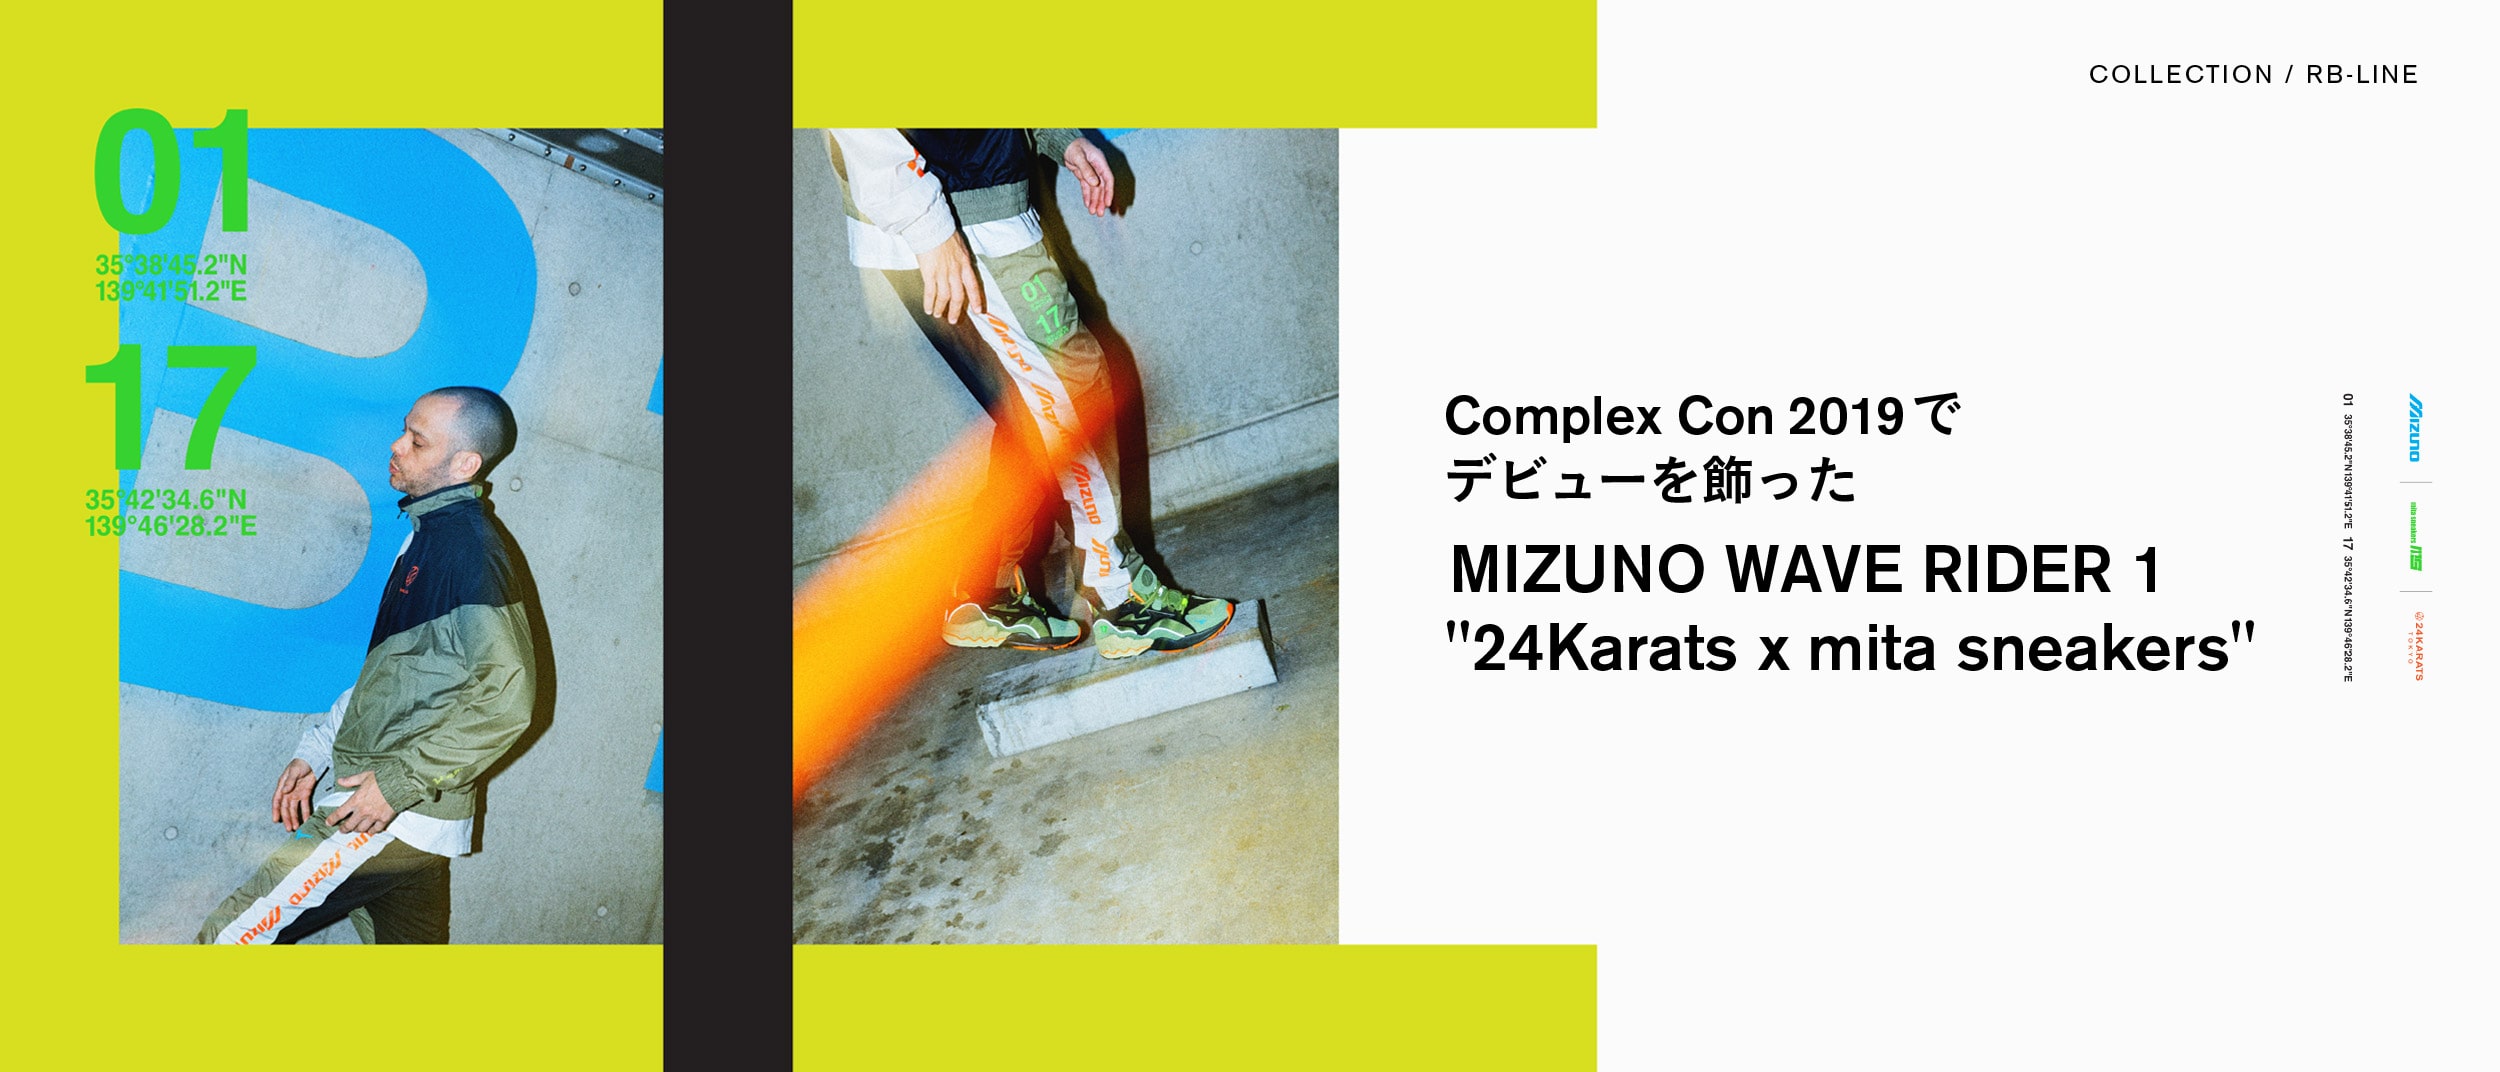 Complex Con 2019 でデビューを飾った MIZUNO WAVE RIDER 1 "24Karats x mita sneakers"